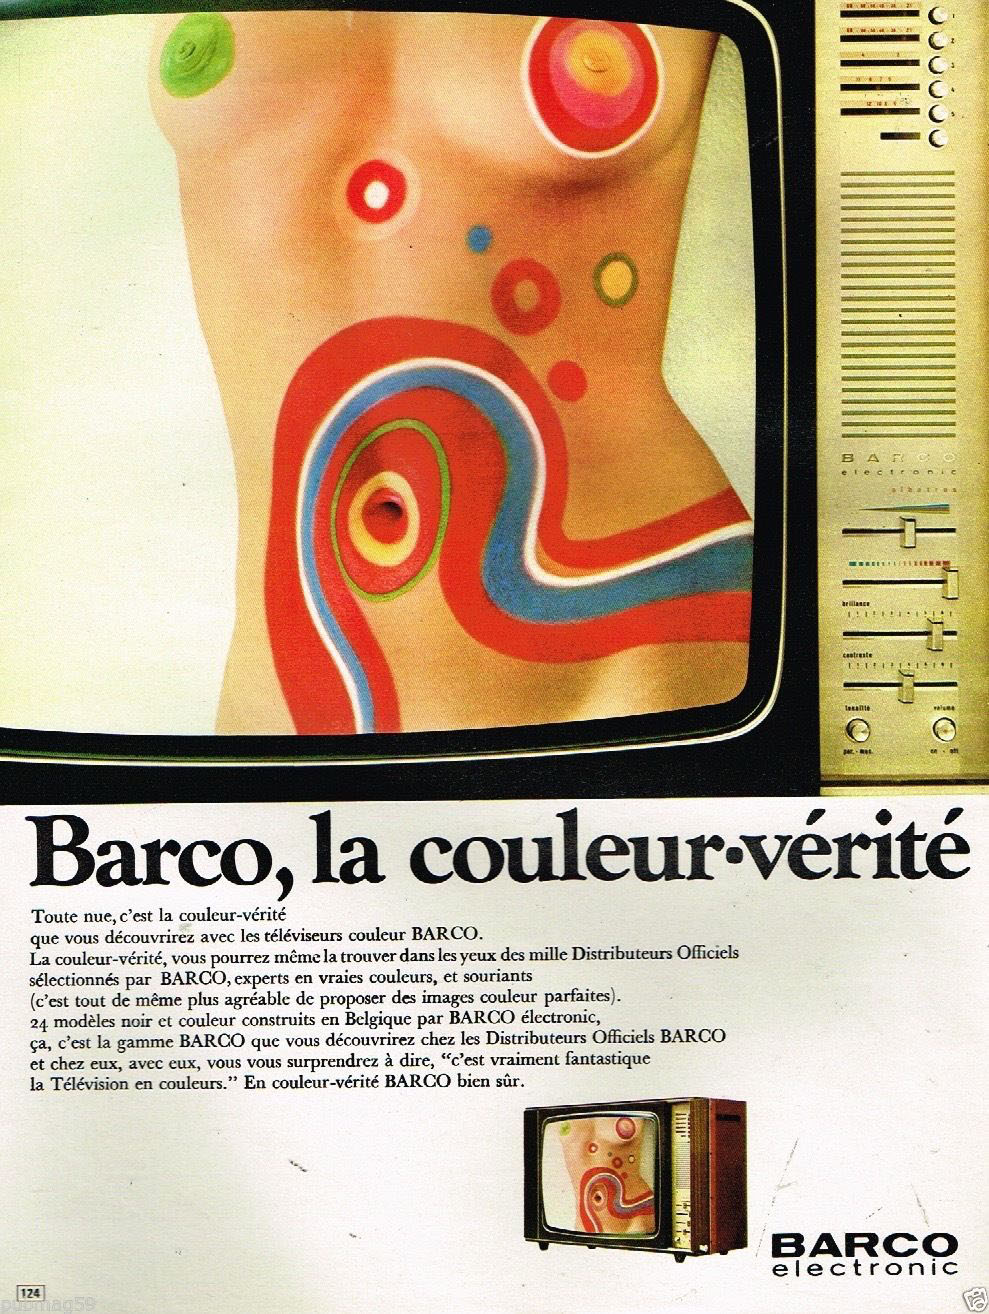 Publicité advertising 1970 Televiseur Television Barco electronic Couleur